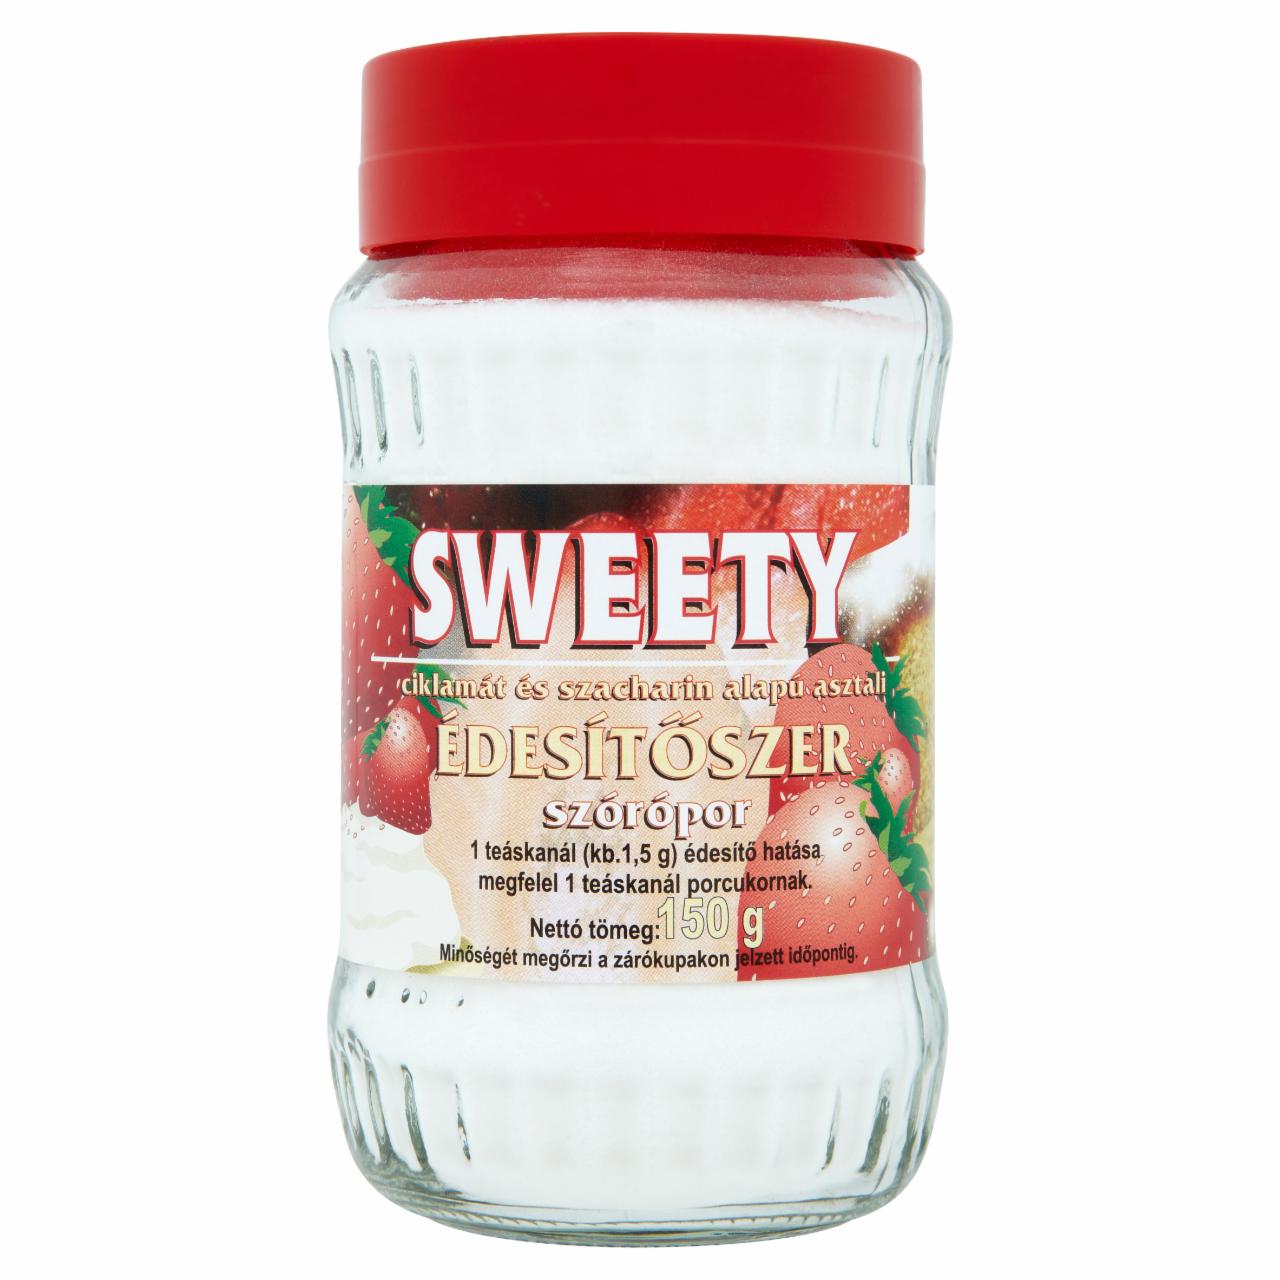 Képek - Sweety édesítőszer szórópor 150 g